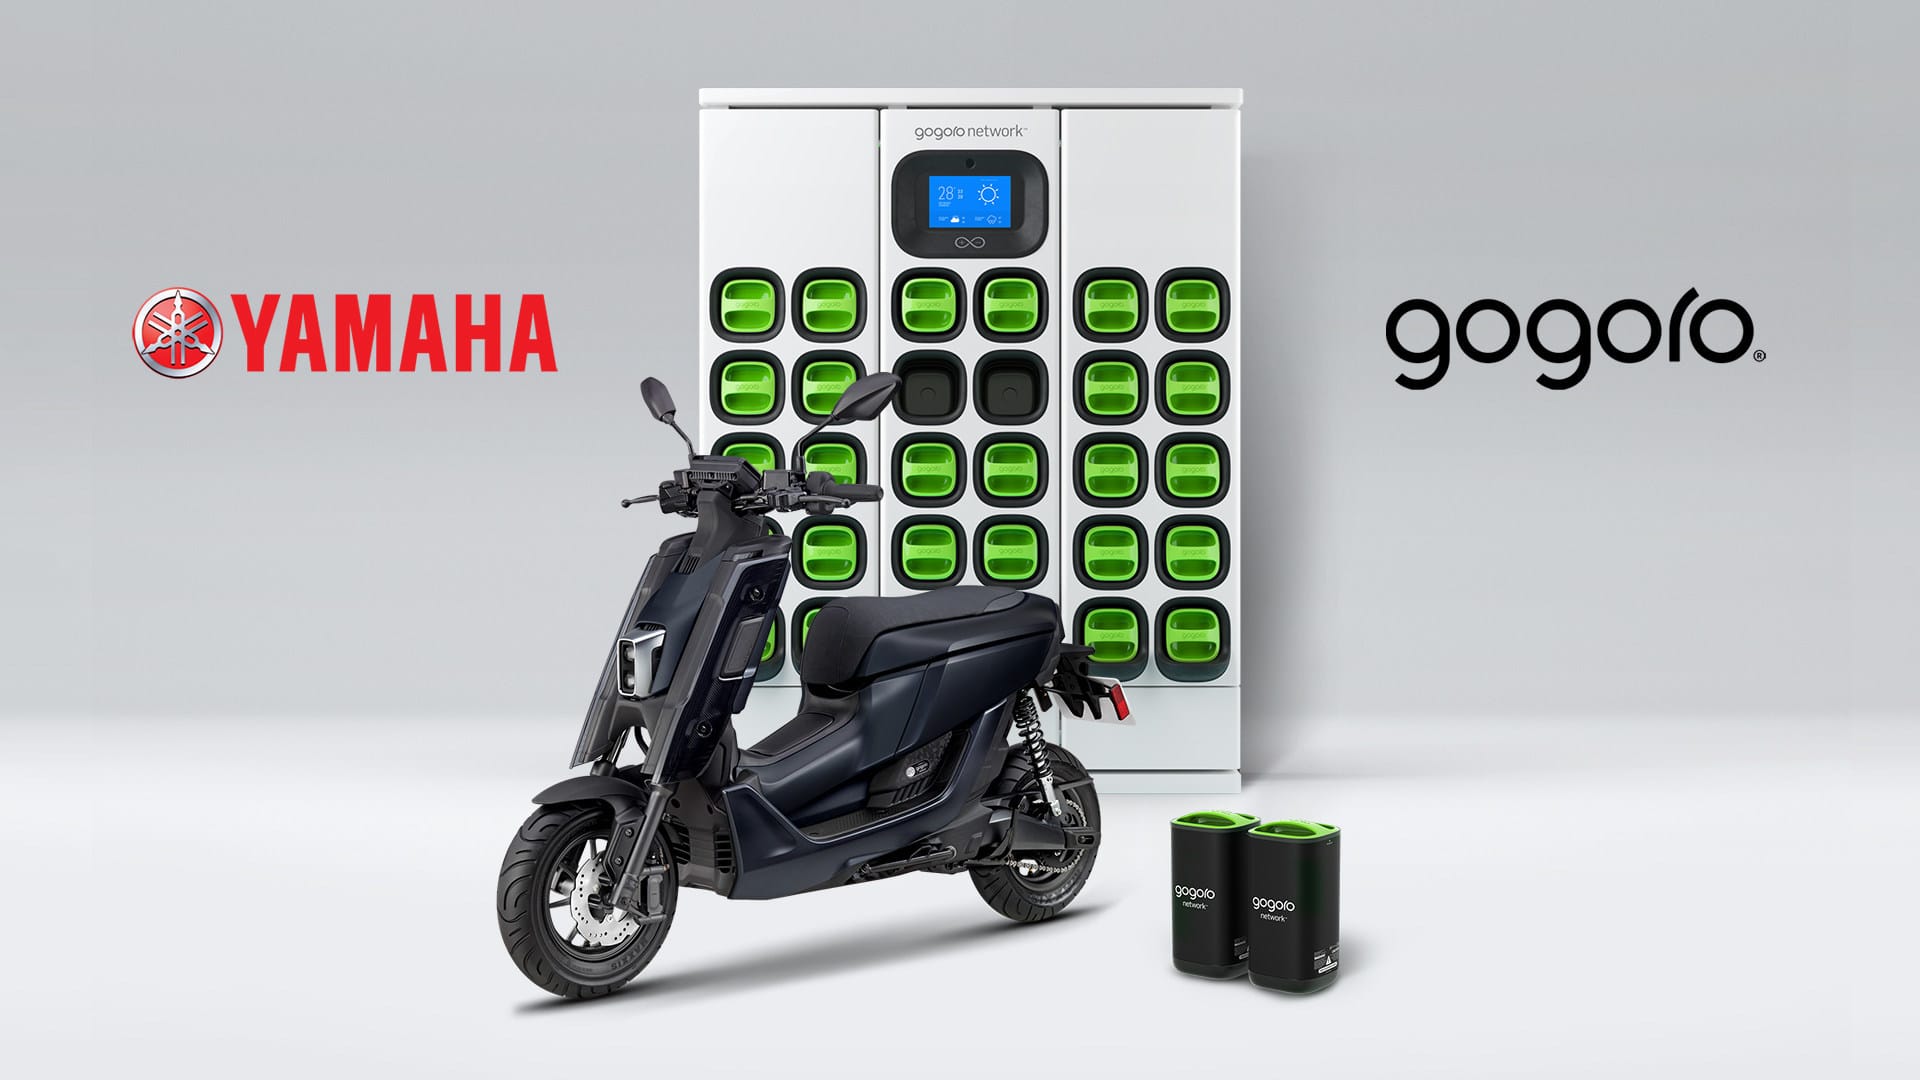 Yamaha expands portfolio of GOGORO-POWERED vehicles, introduces new EMF scooter